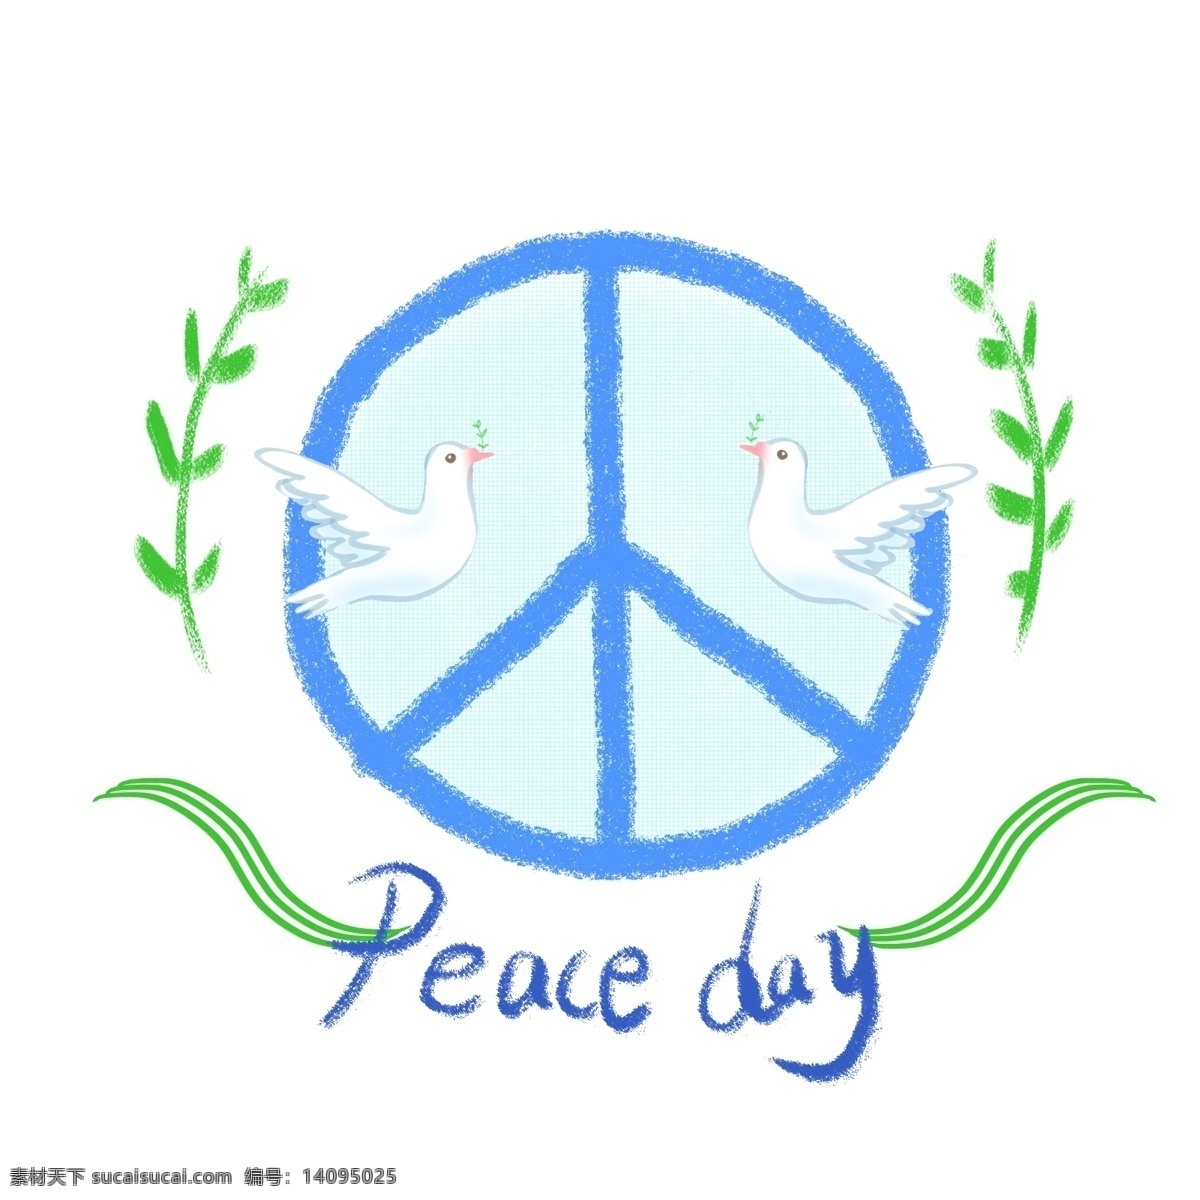 国际 平日 手绘 反战 标志 和平鸽 清新 商用 元素 橄榄枝 蓝色 绿色 国际和平日 反战标志 手账